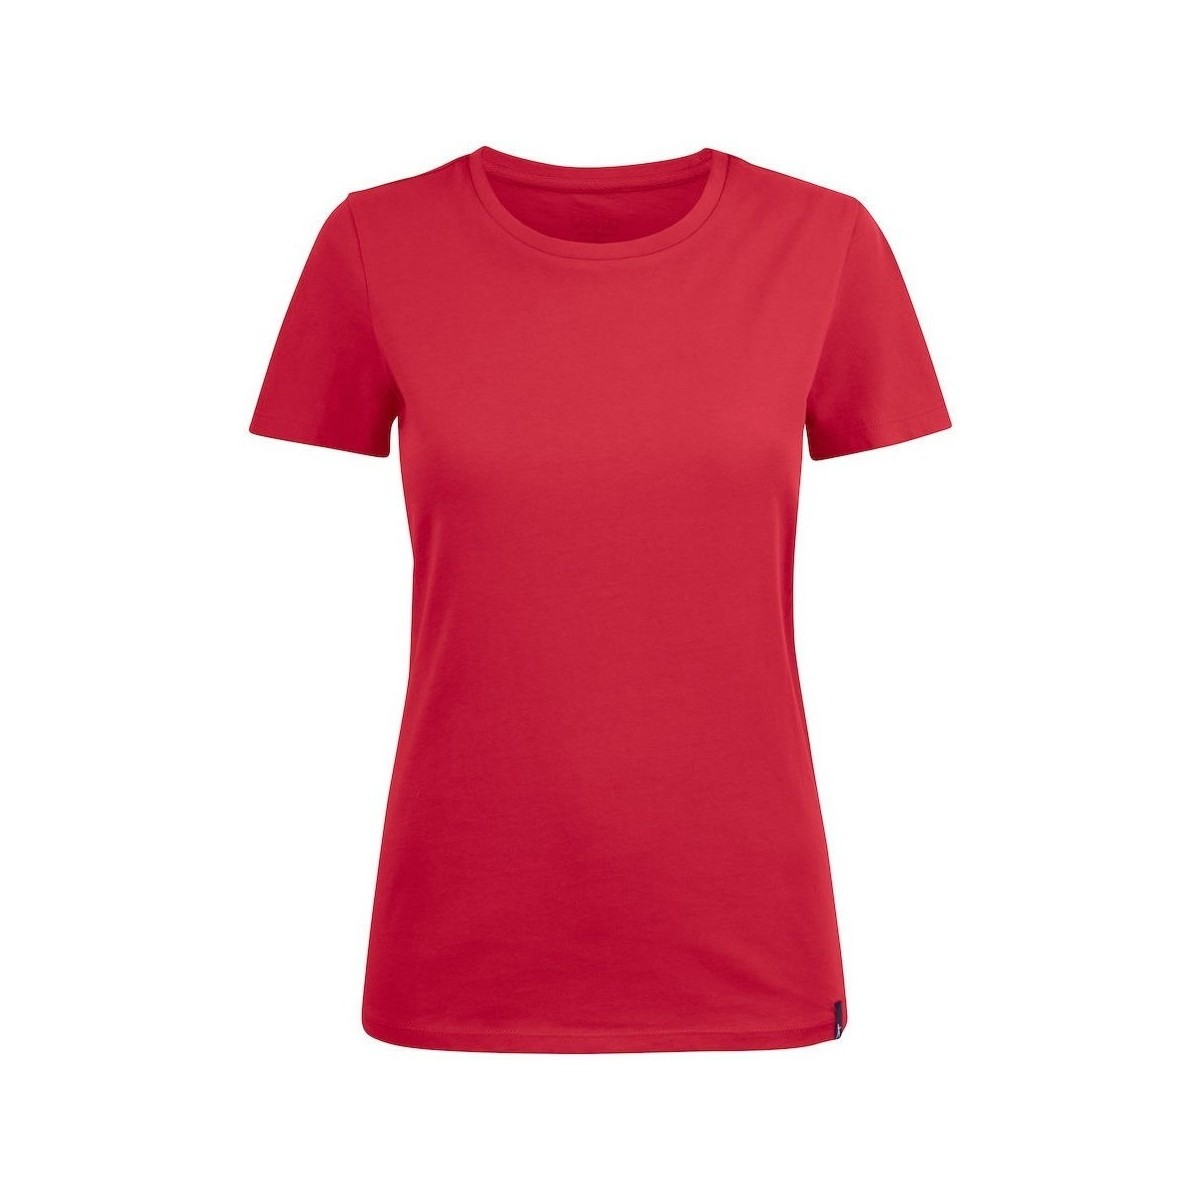 Vêtements Femme T-shirts manches longues Harvest American U Rouge